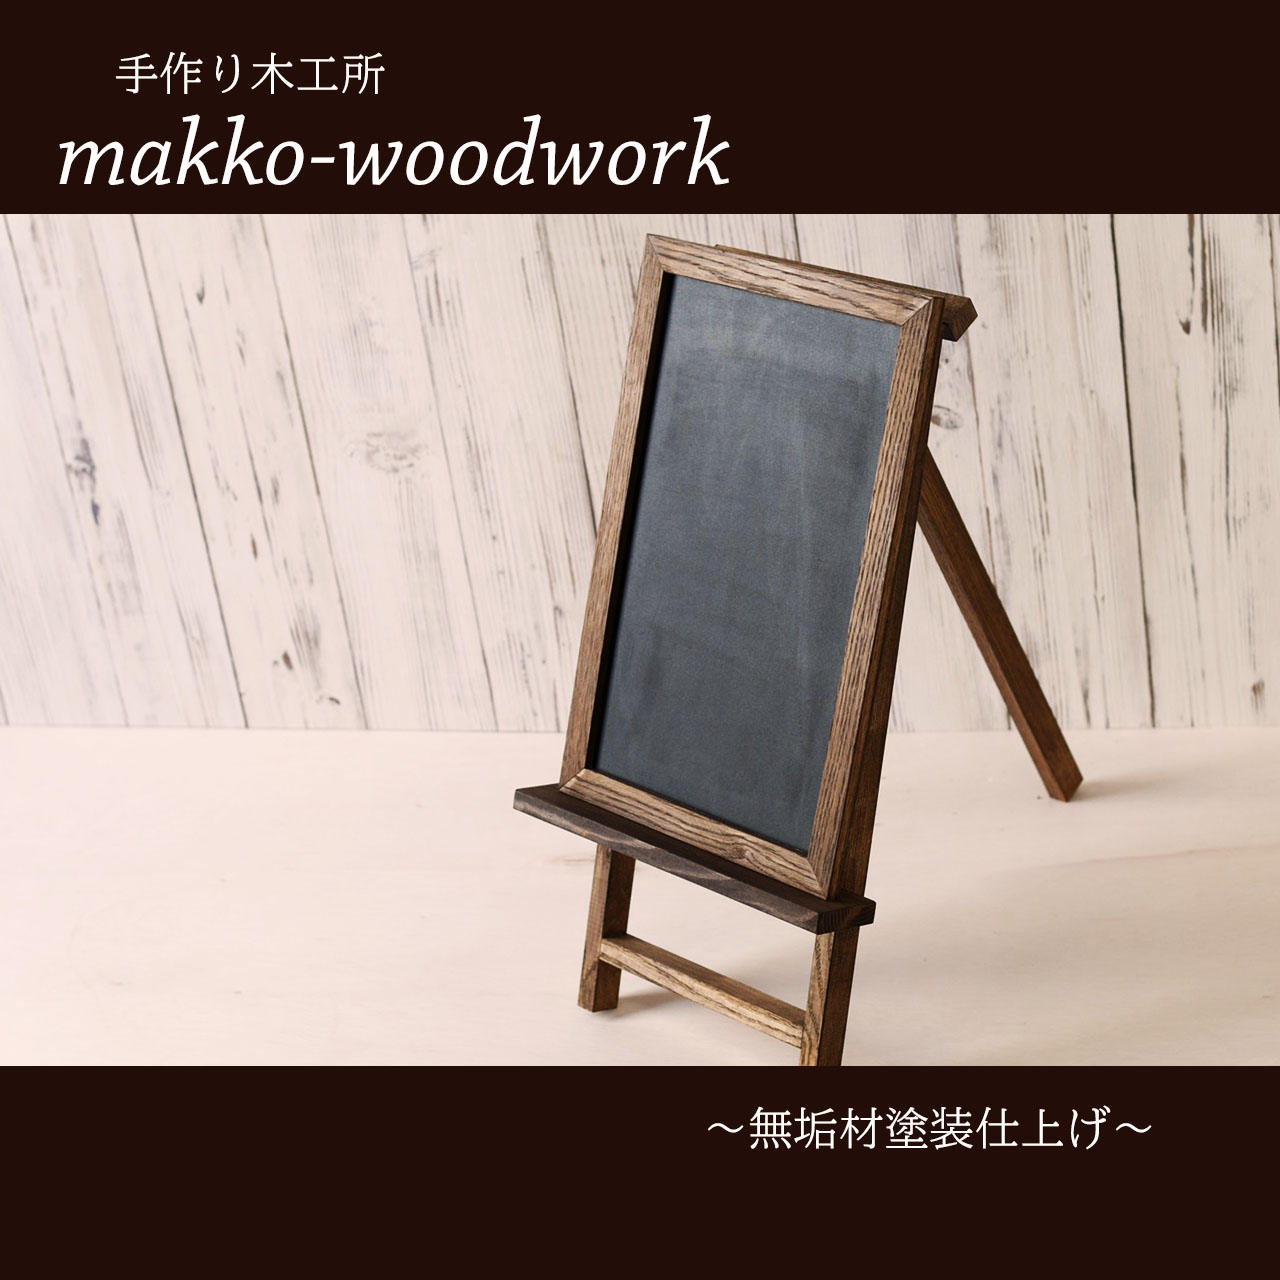 木製ウェルカムボード 無垢材 黒板 ブラックボード 店前看板 Iichi ハンドメイド クラフト作品 手仕事品の通販